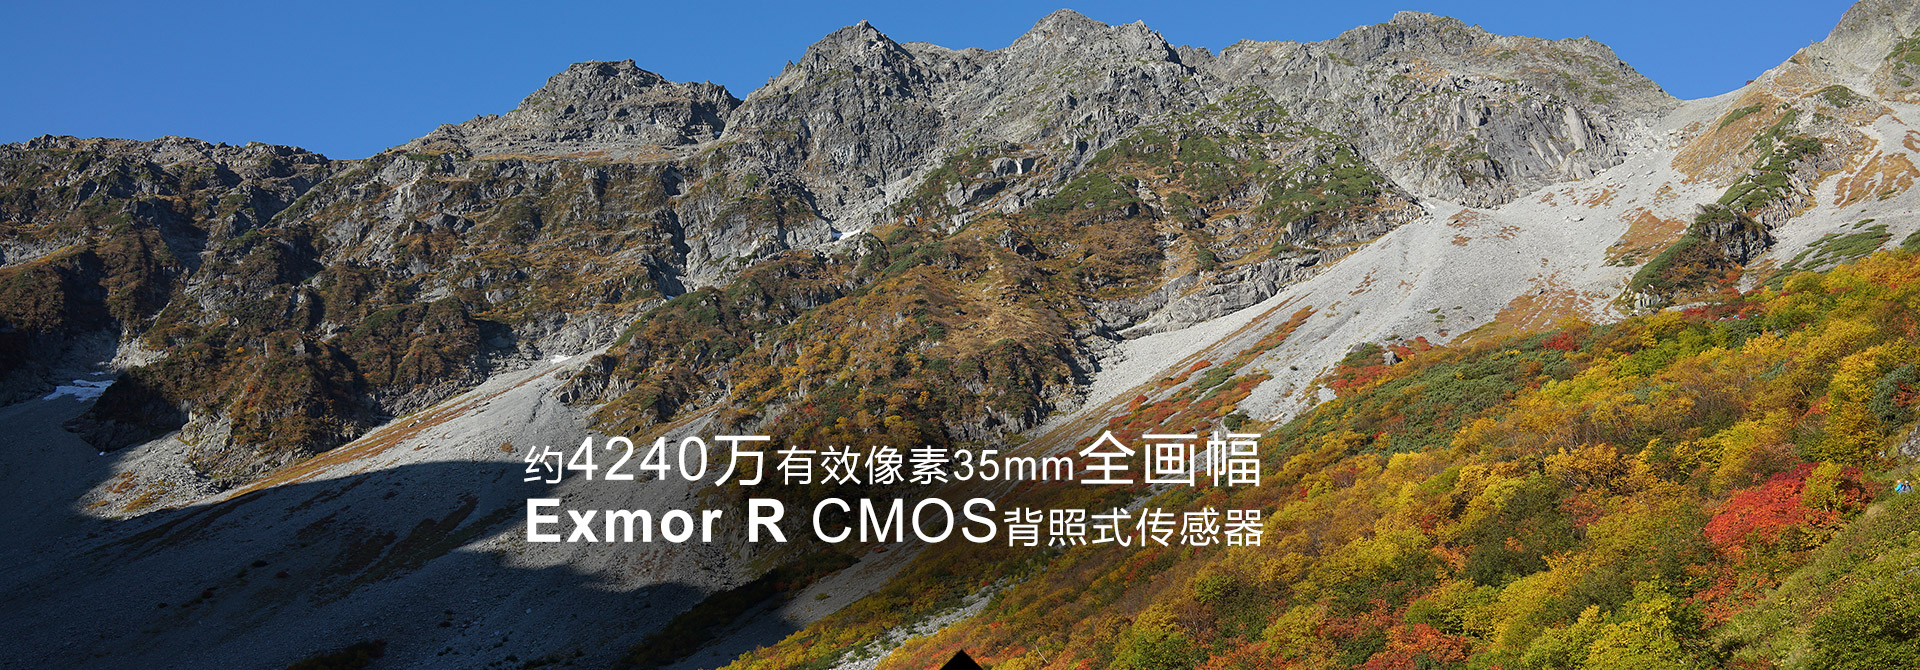 约4240万有效像素 35mm全画幅Exmor R CMOS背照式传感器